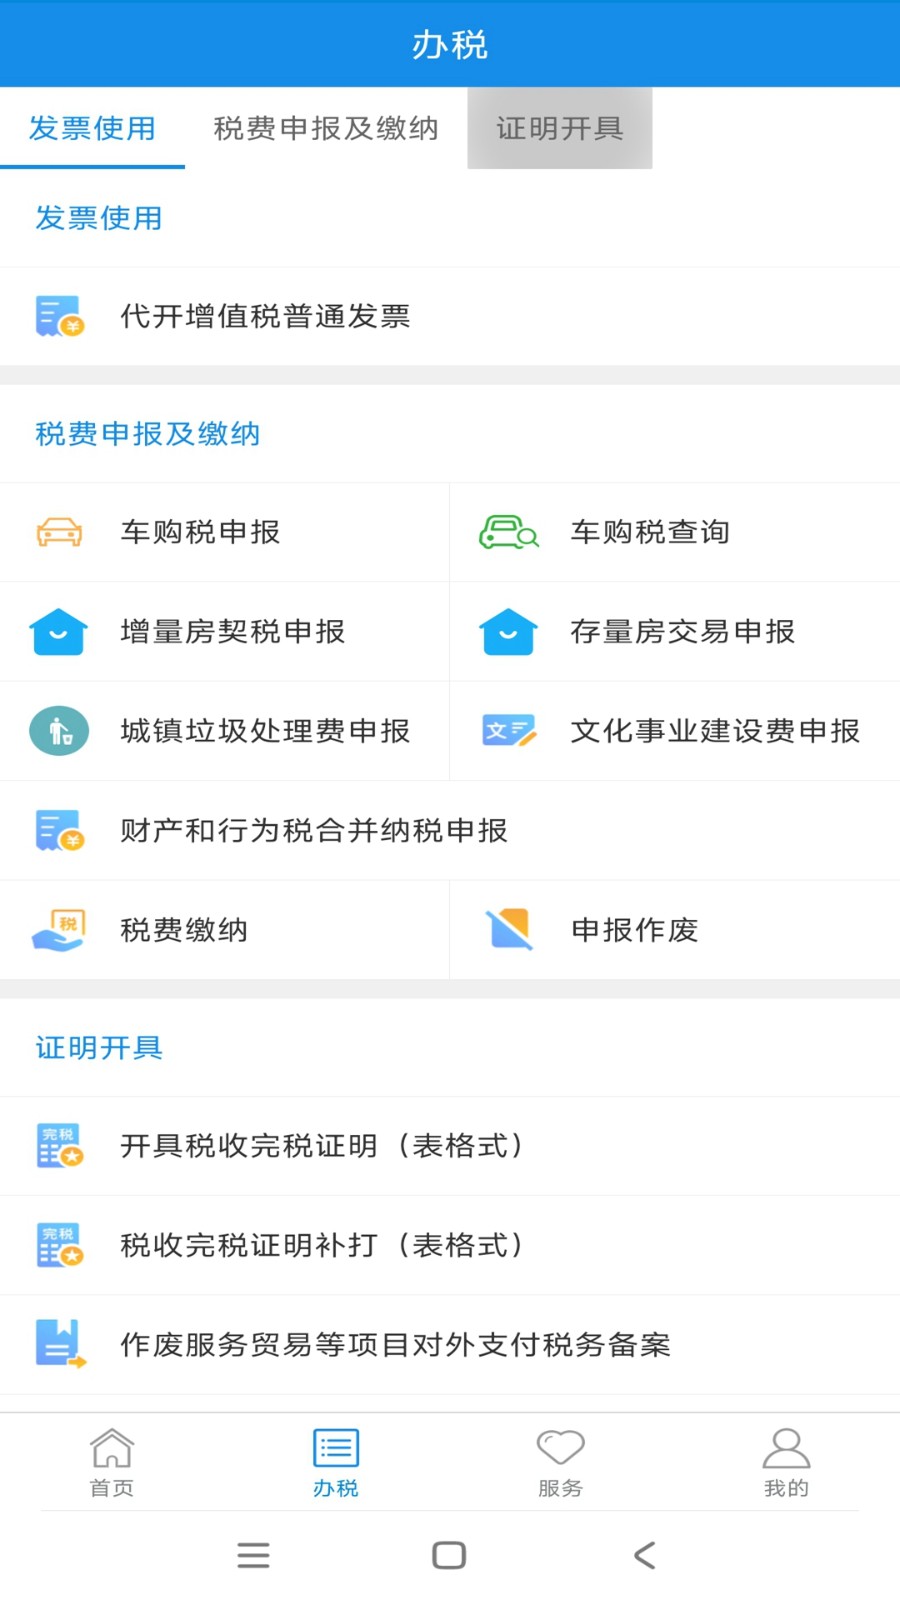 新疆税务 V3.40.0 安卓最新版截图4